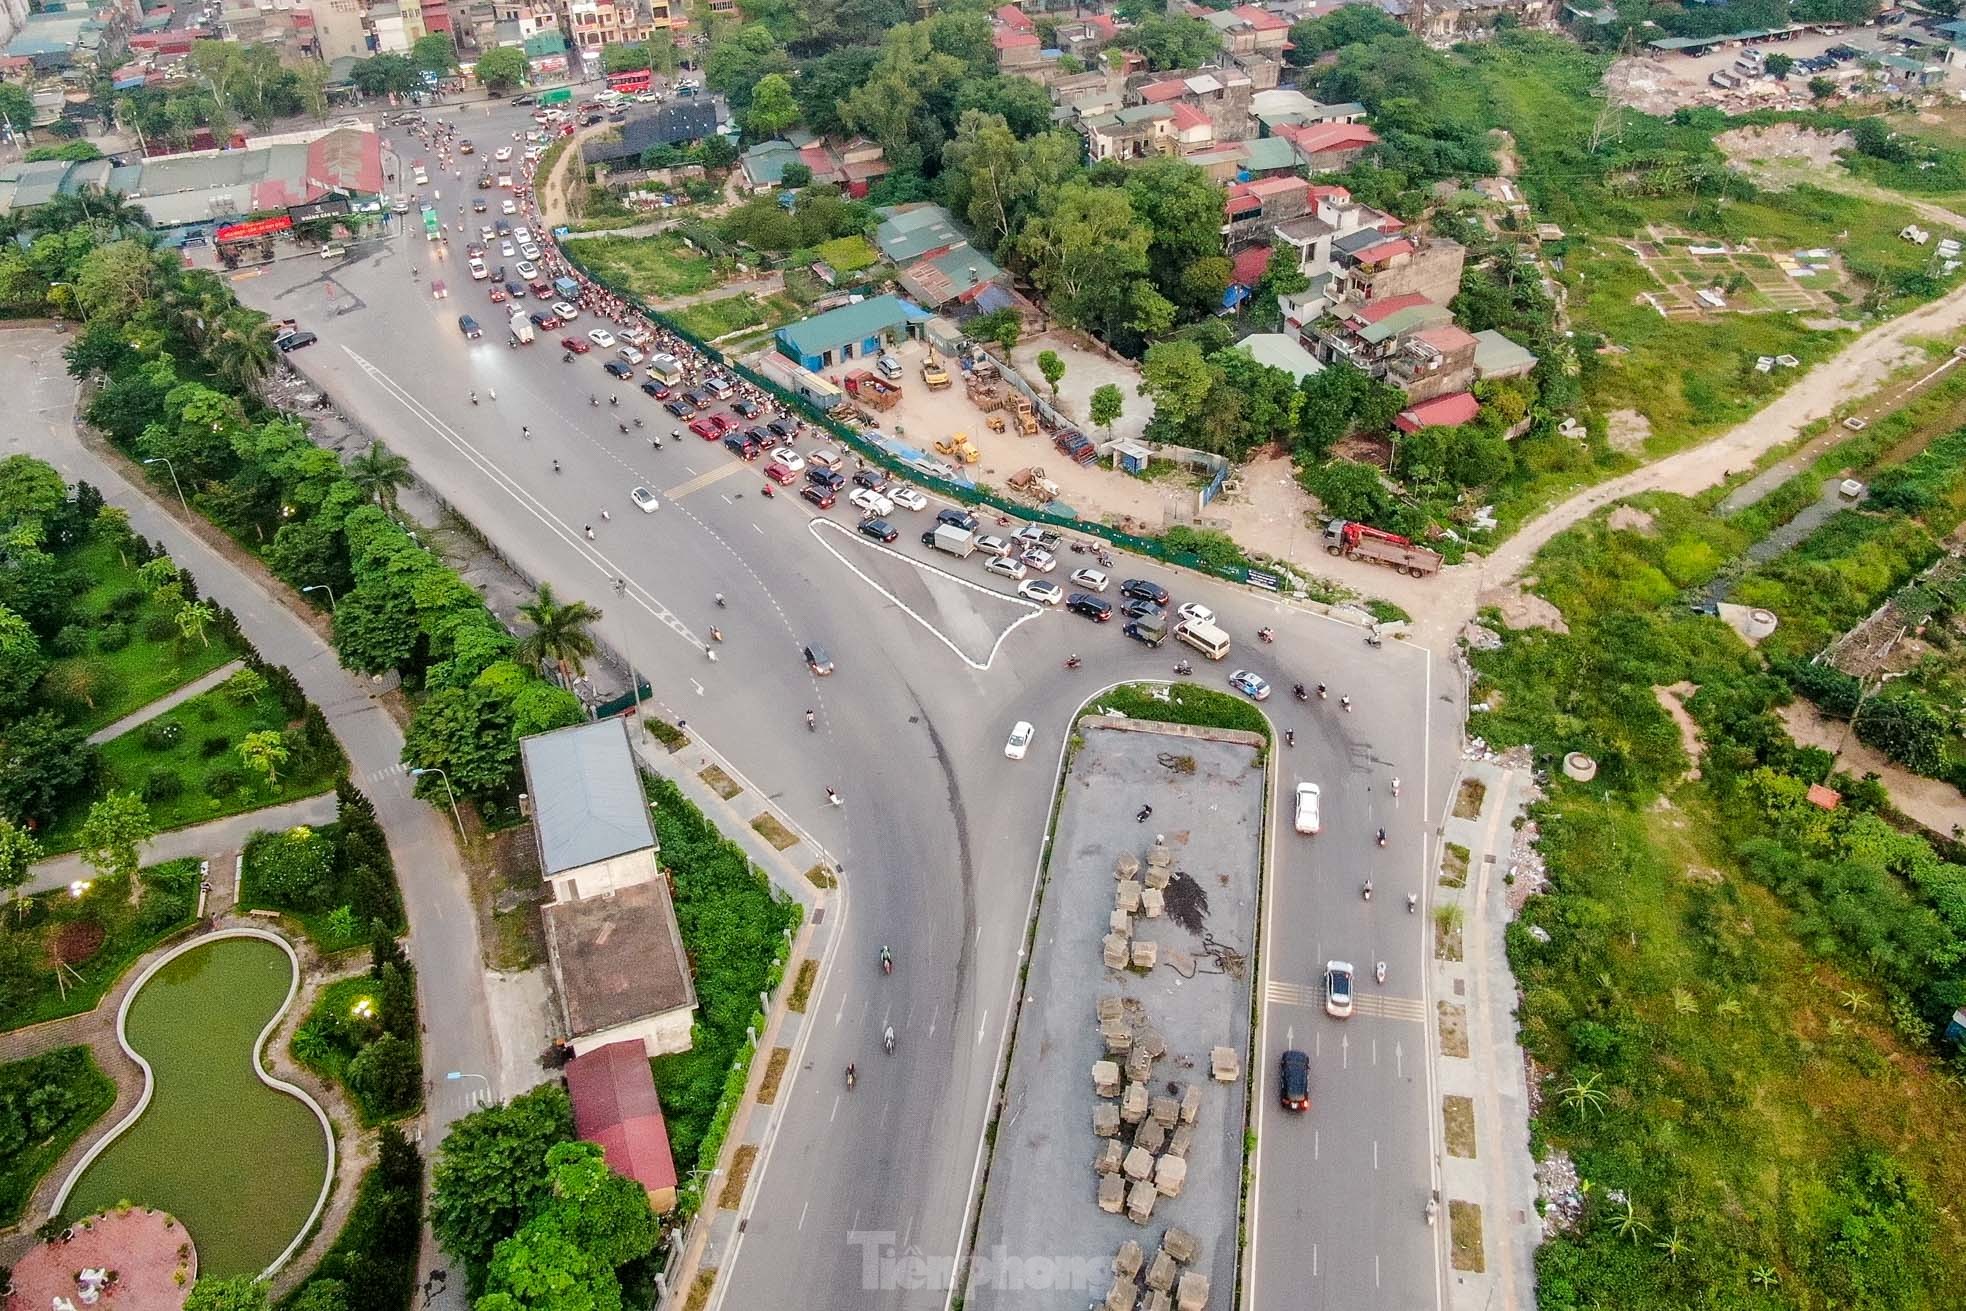 Cầu vượt bỏ hoang trên đại lộ nghìn tỷ ở Hà Nội - Ảnh 4